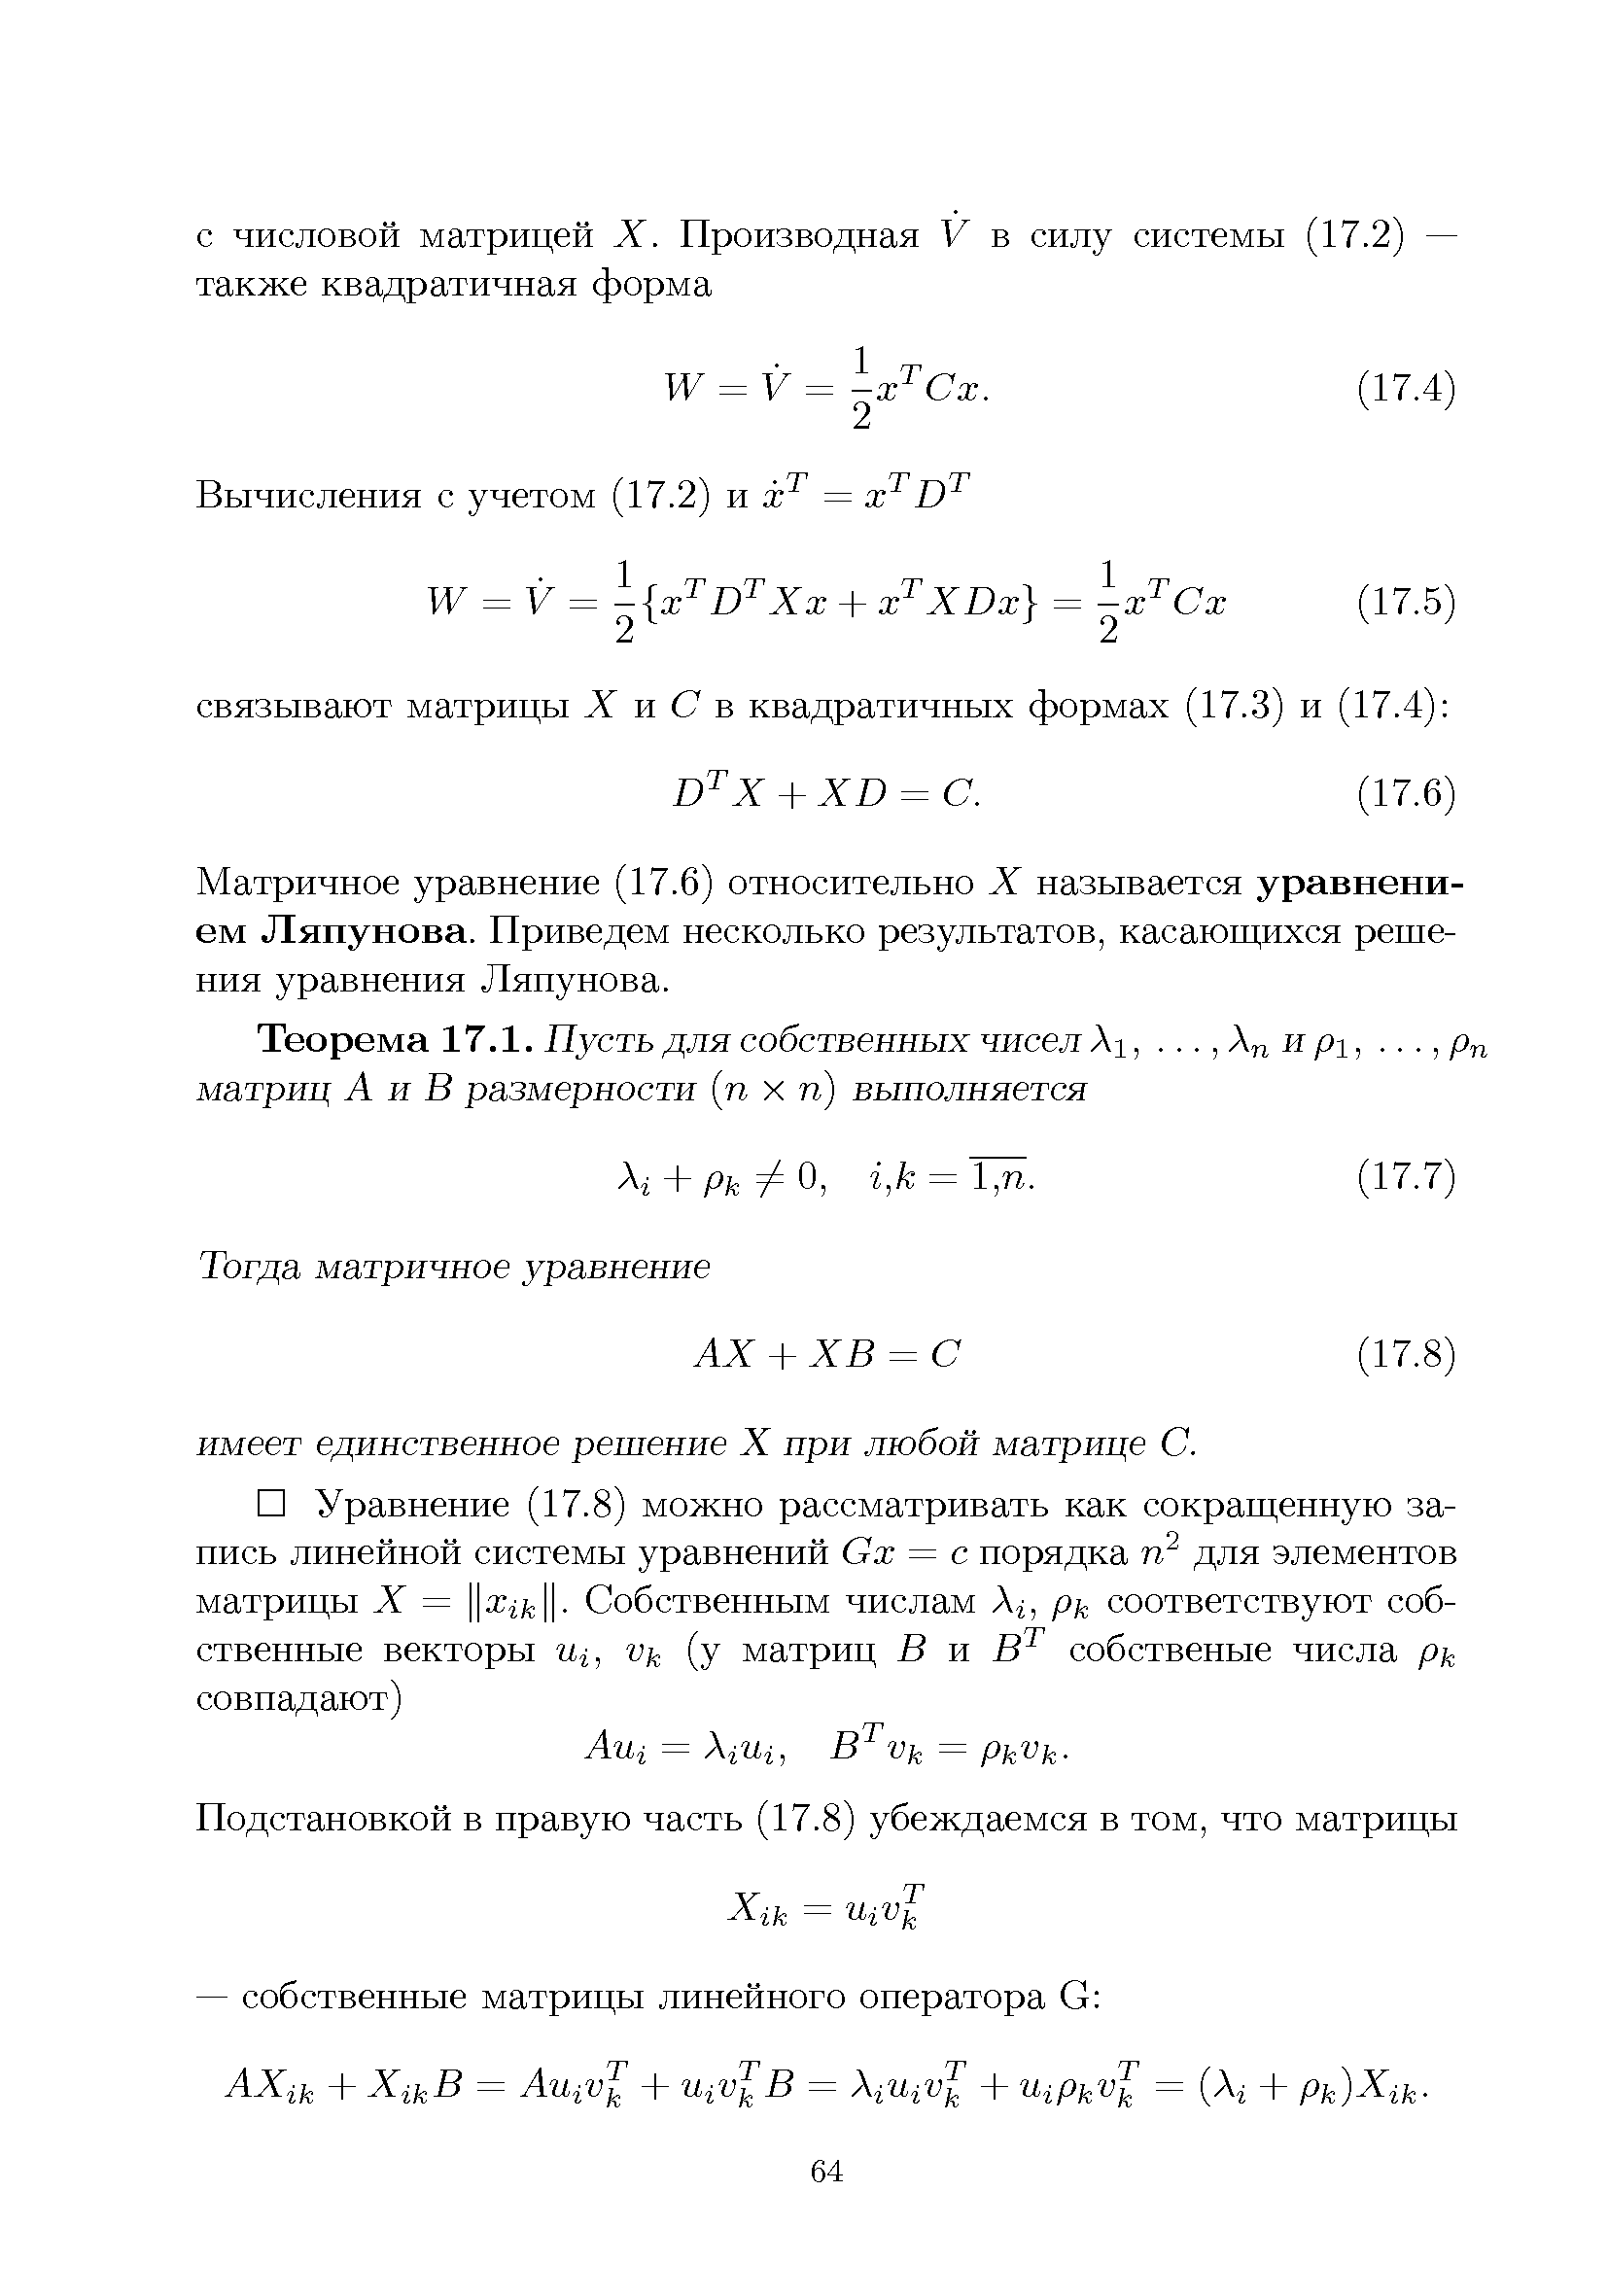 Матричное уравнение (17.6) относительно X называется уравнением Ляпунова. Приведем несколько результатов, касающихся решения уравнения Ляпунова.
